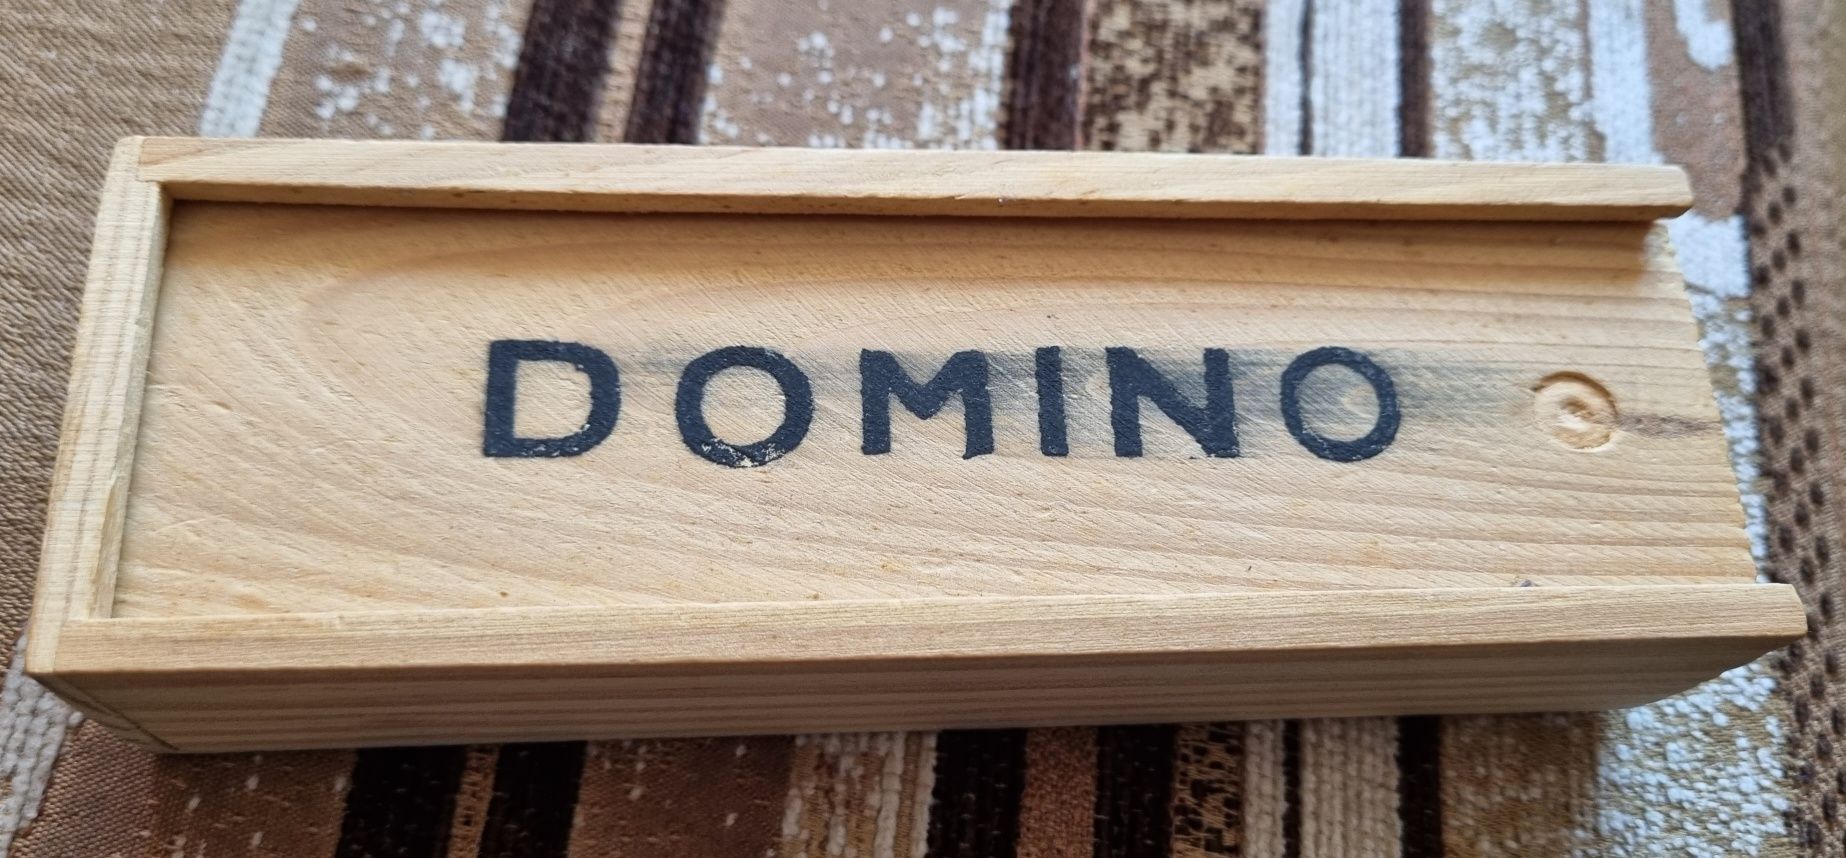 Domino w drewnianym pudełku